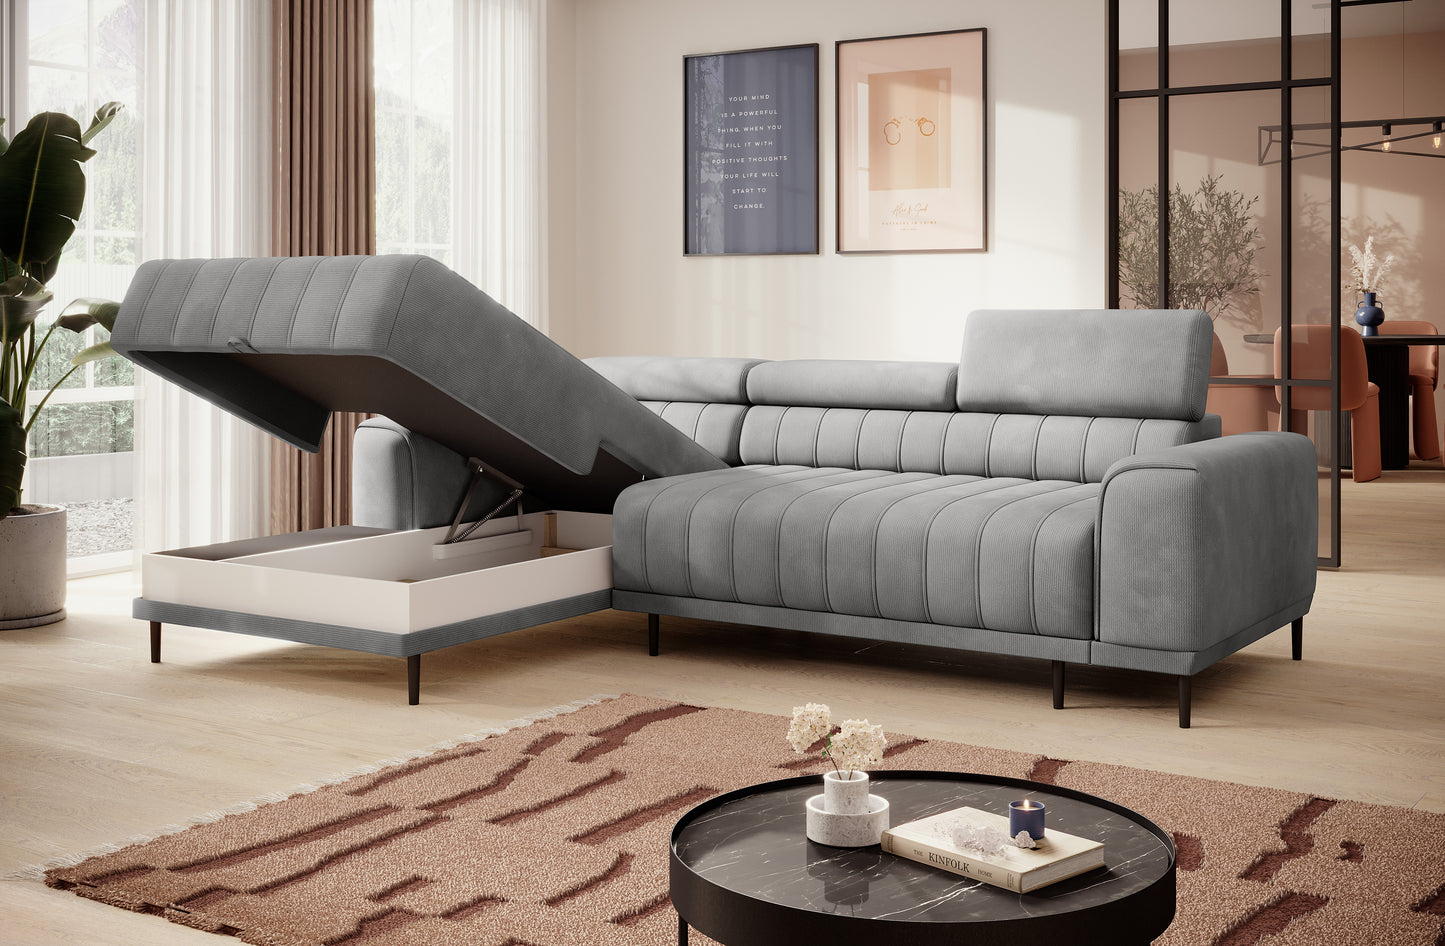 Dīvāns KAVA M 272/178/100 cm - N1 Home